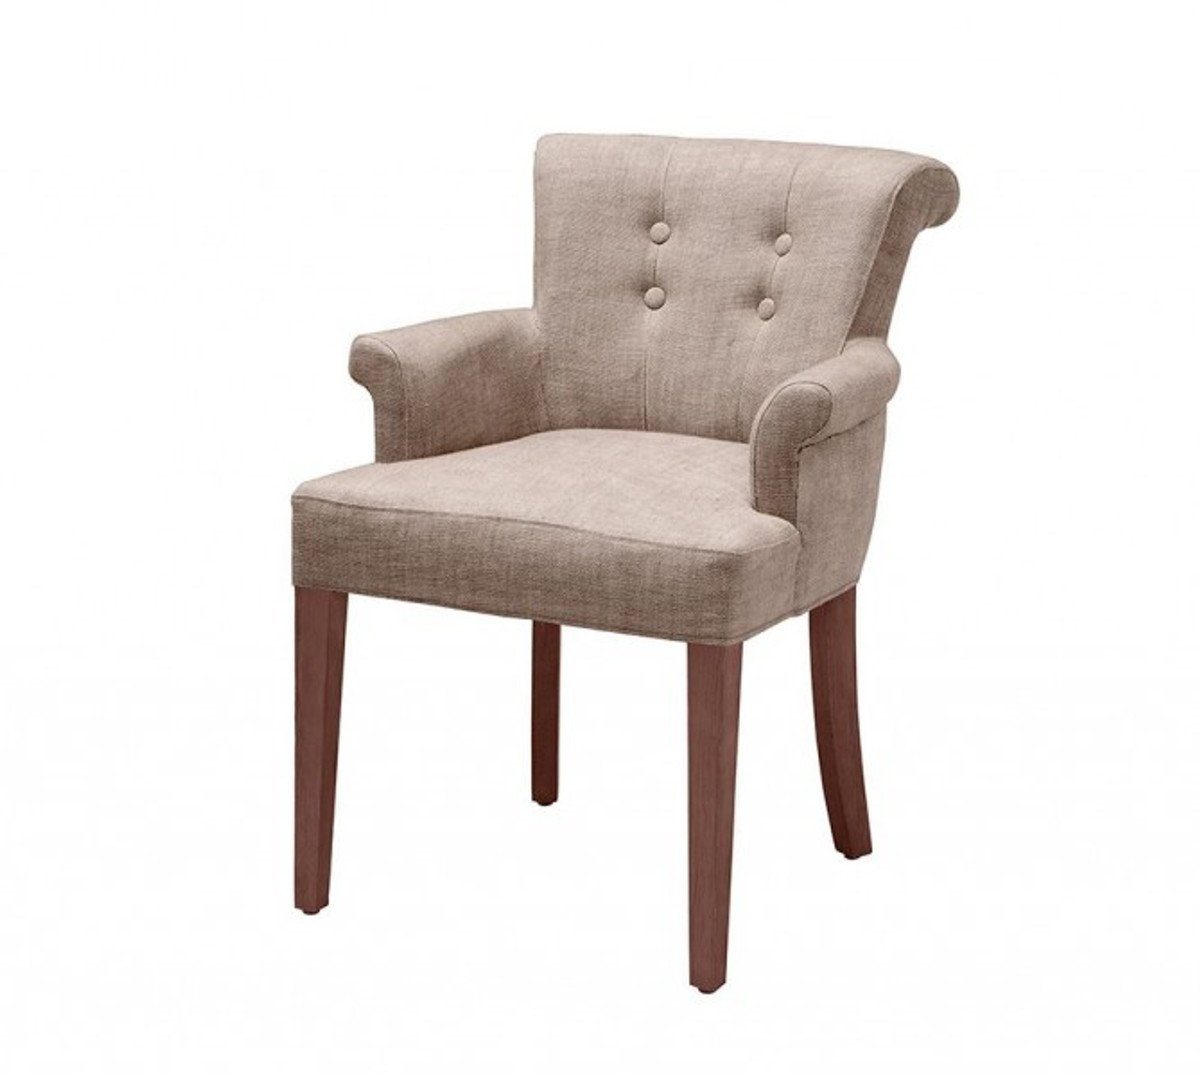 Casa Padrino Armlehnstuhl Luxus Stuhl mit Armlehne Kamelbraun - Luxus Kollektion